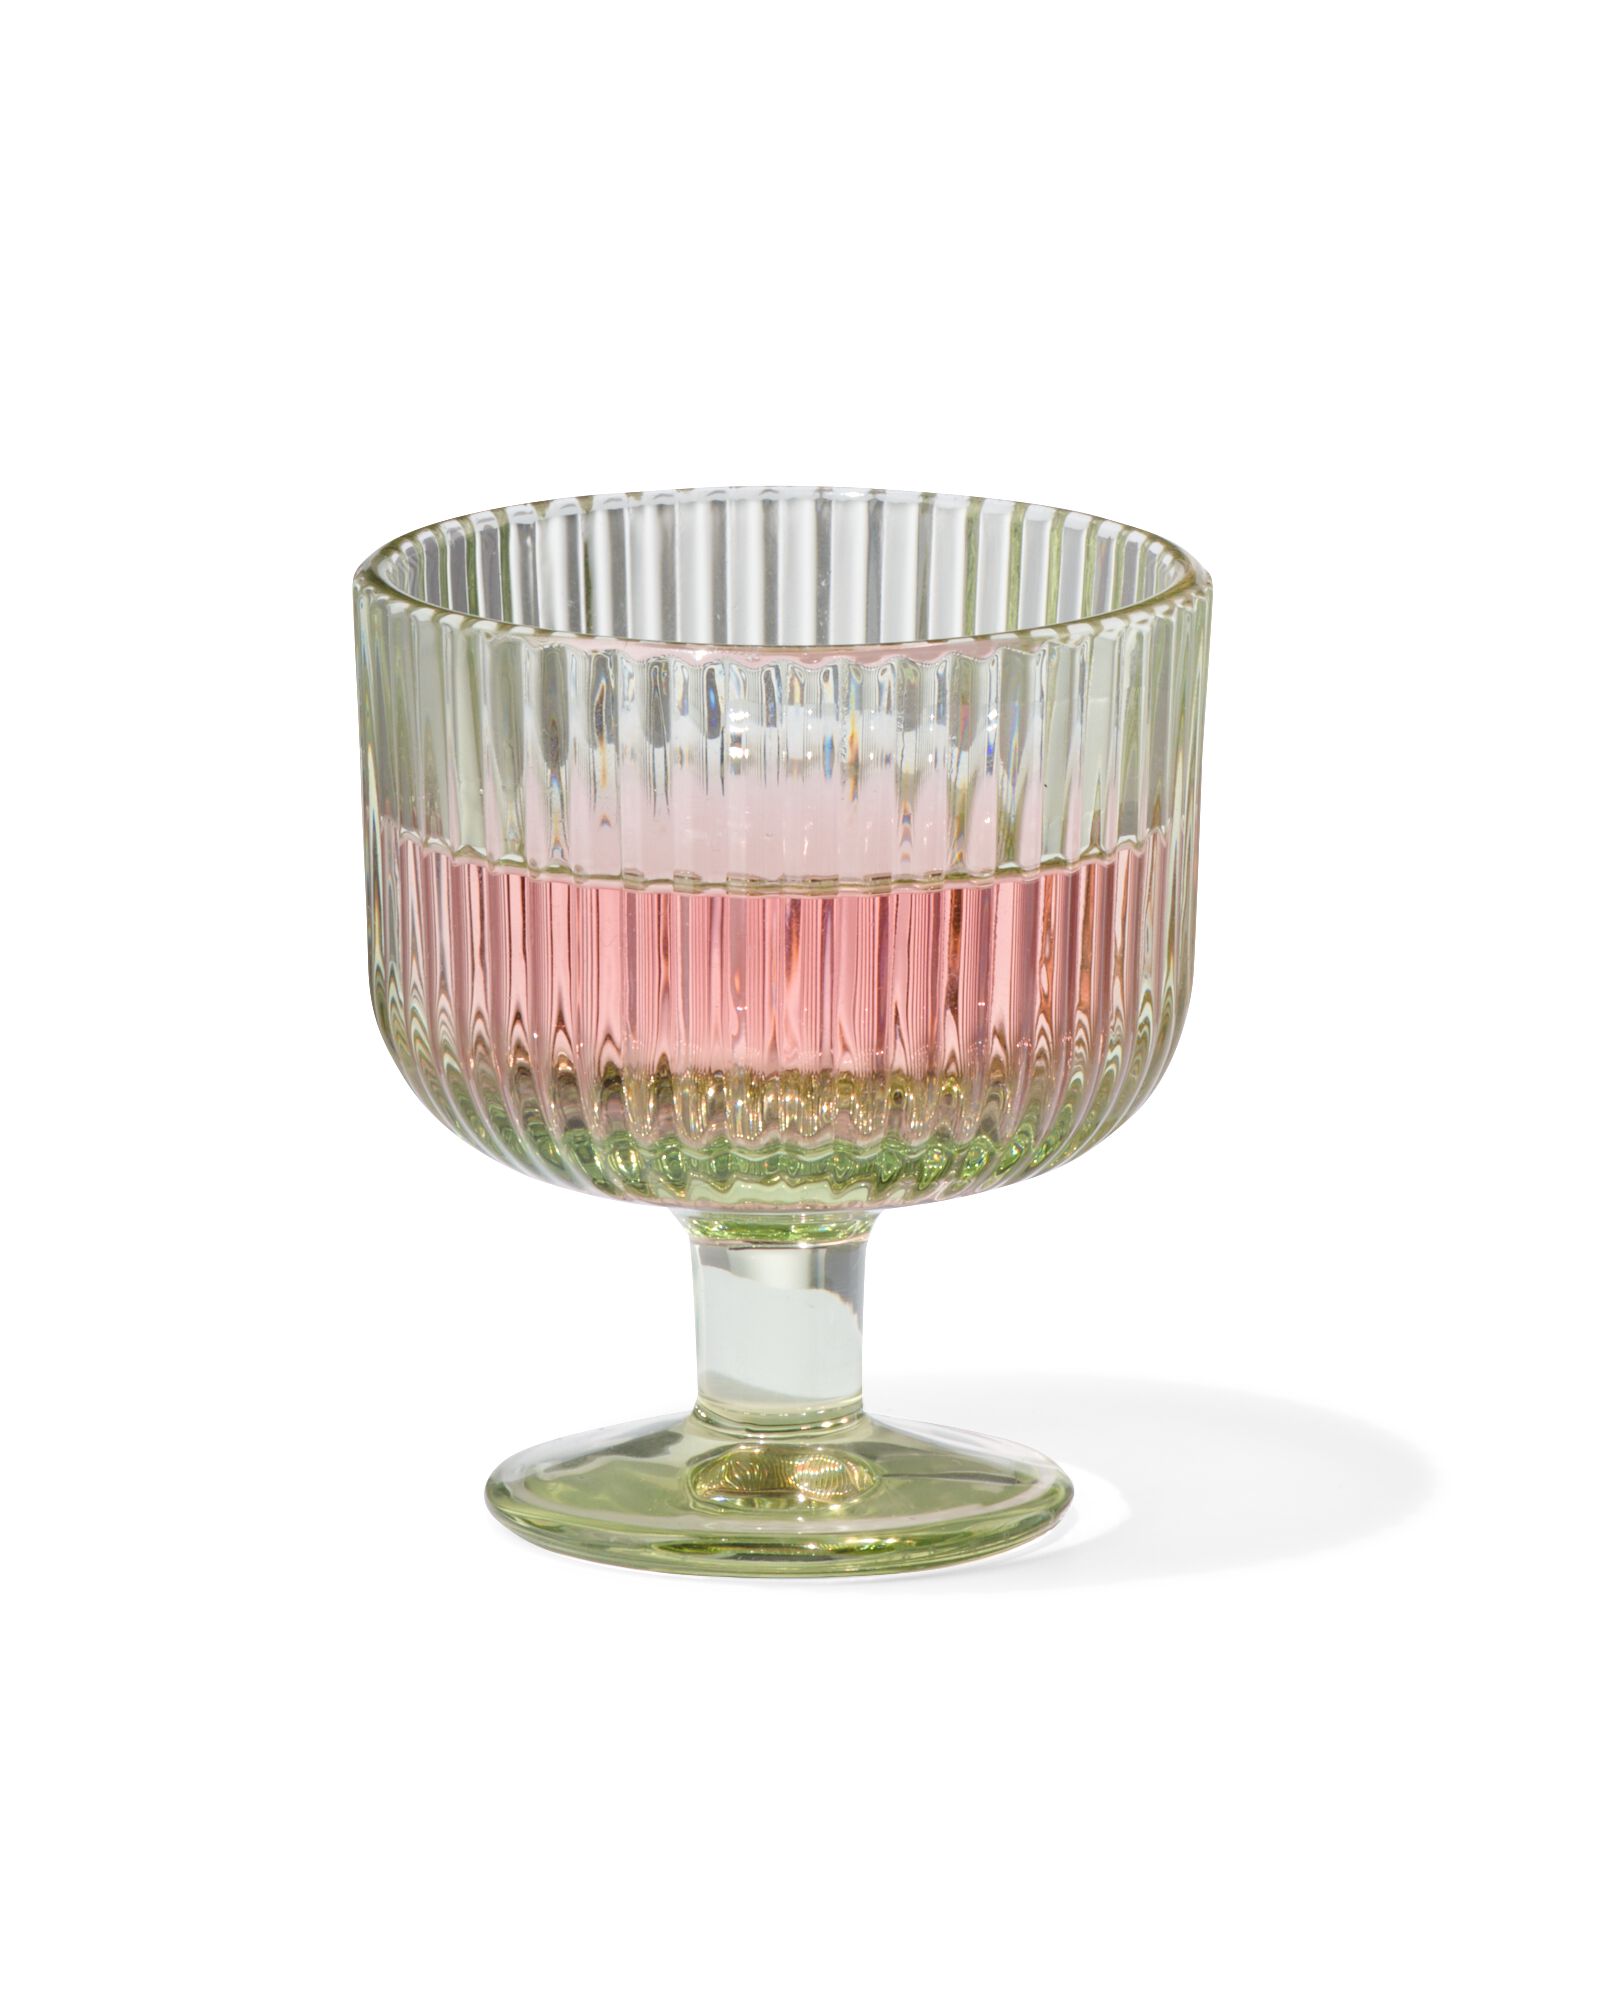 aperitief glas Bergen streep reliëf groen 70ml - 9401104 - HEMA